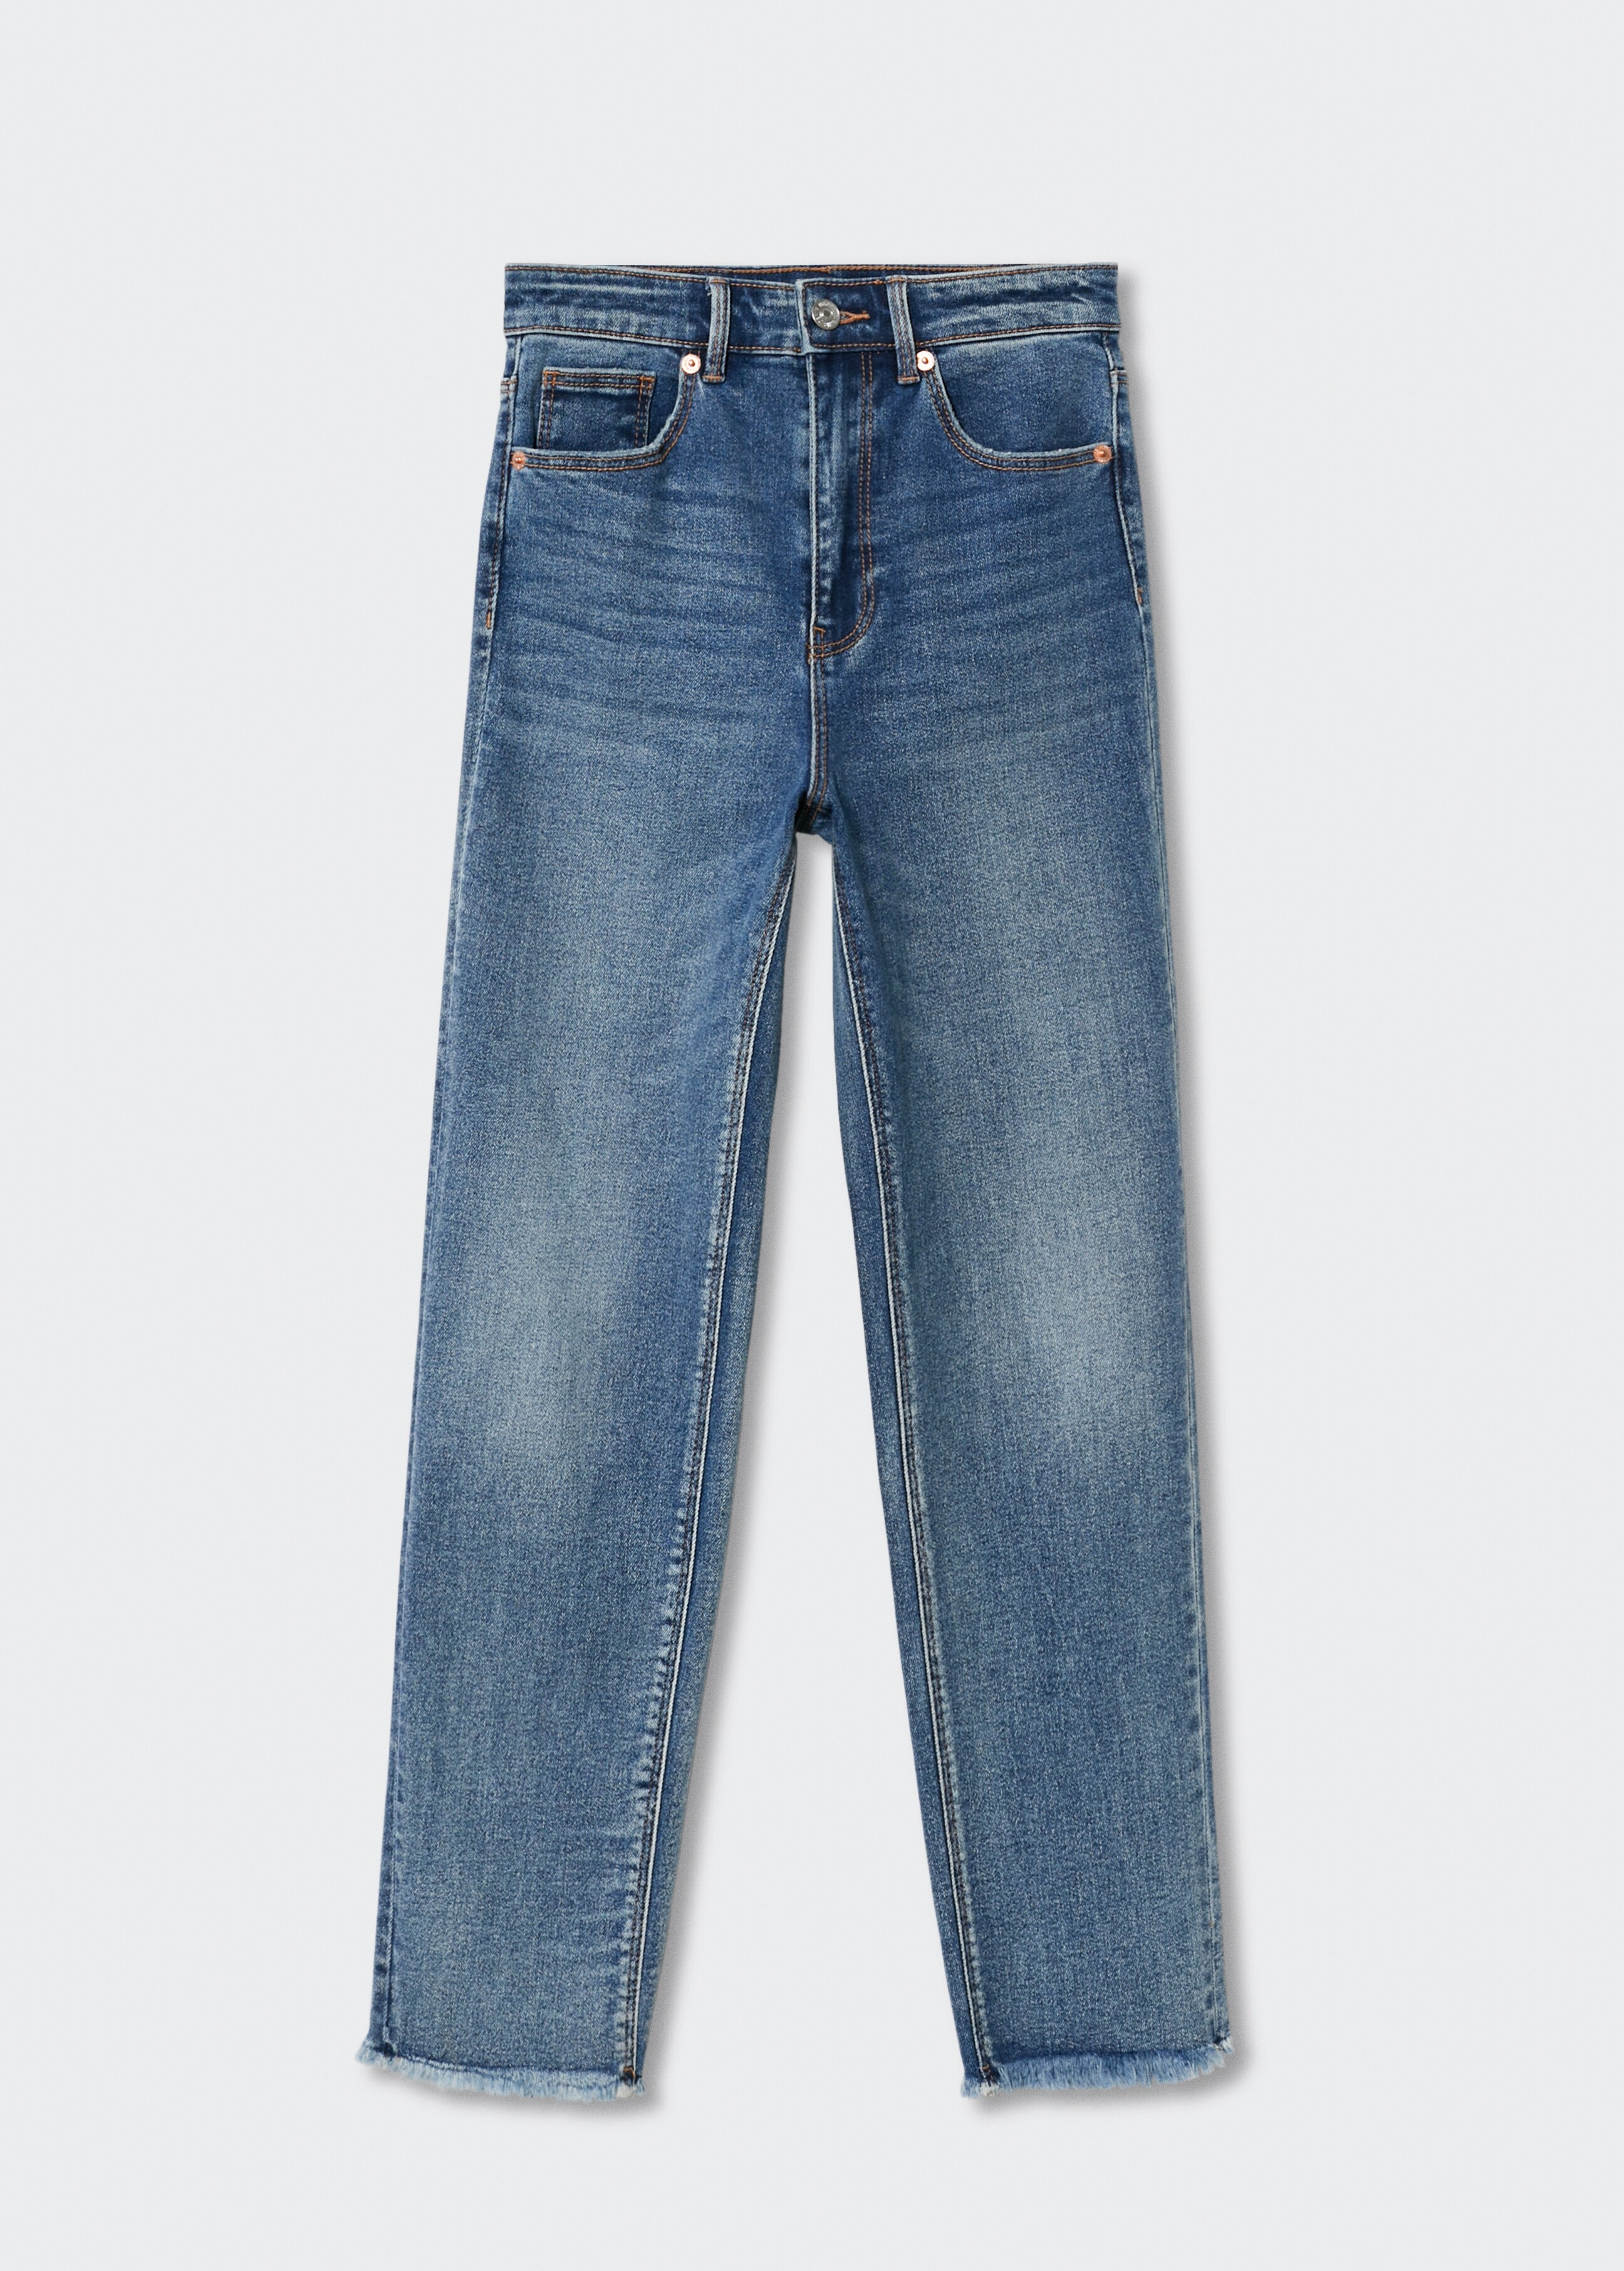 Jeans slim bajo deshilachado - Artículo sin modelo